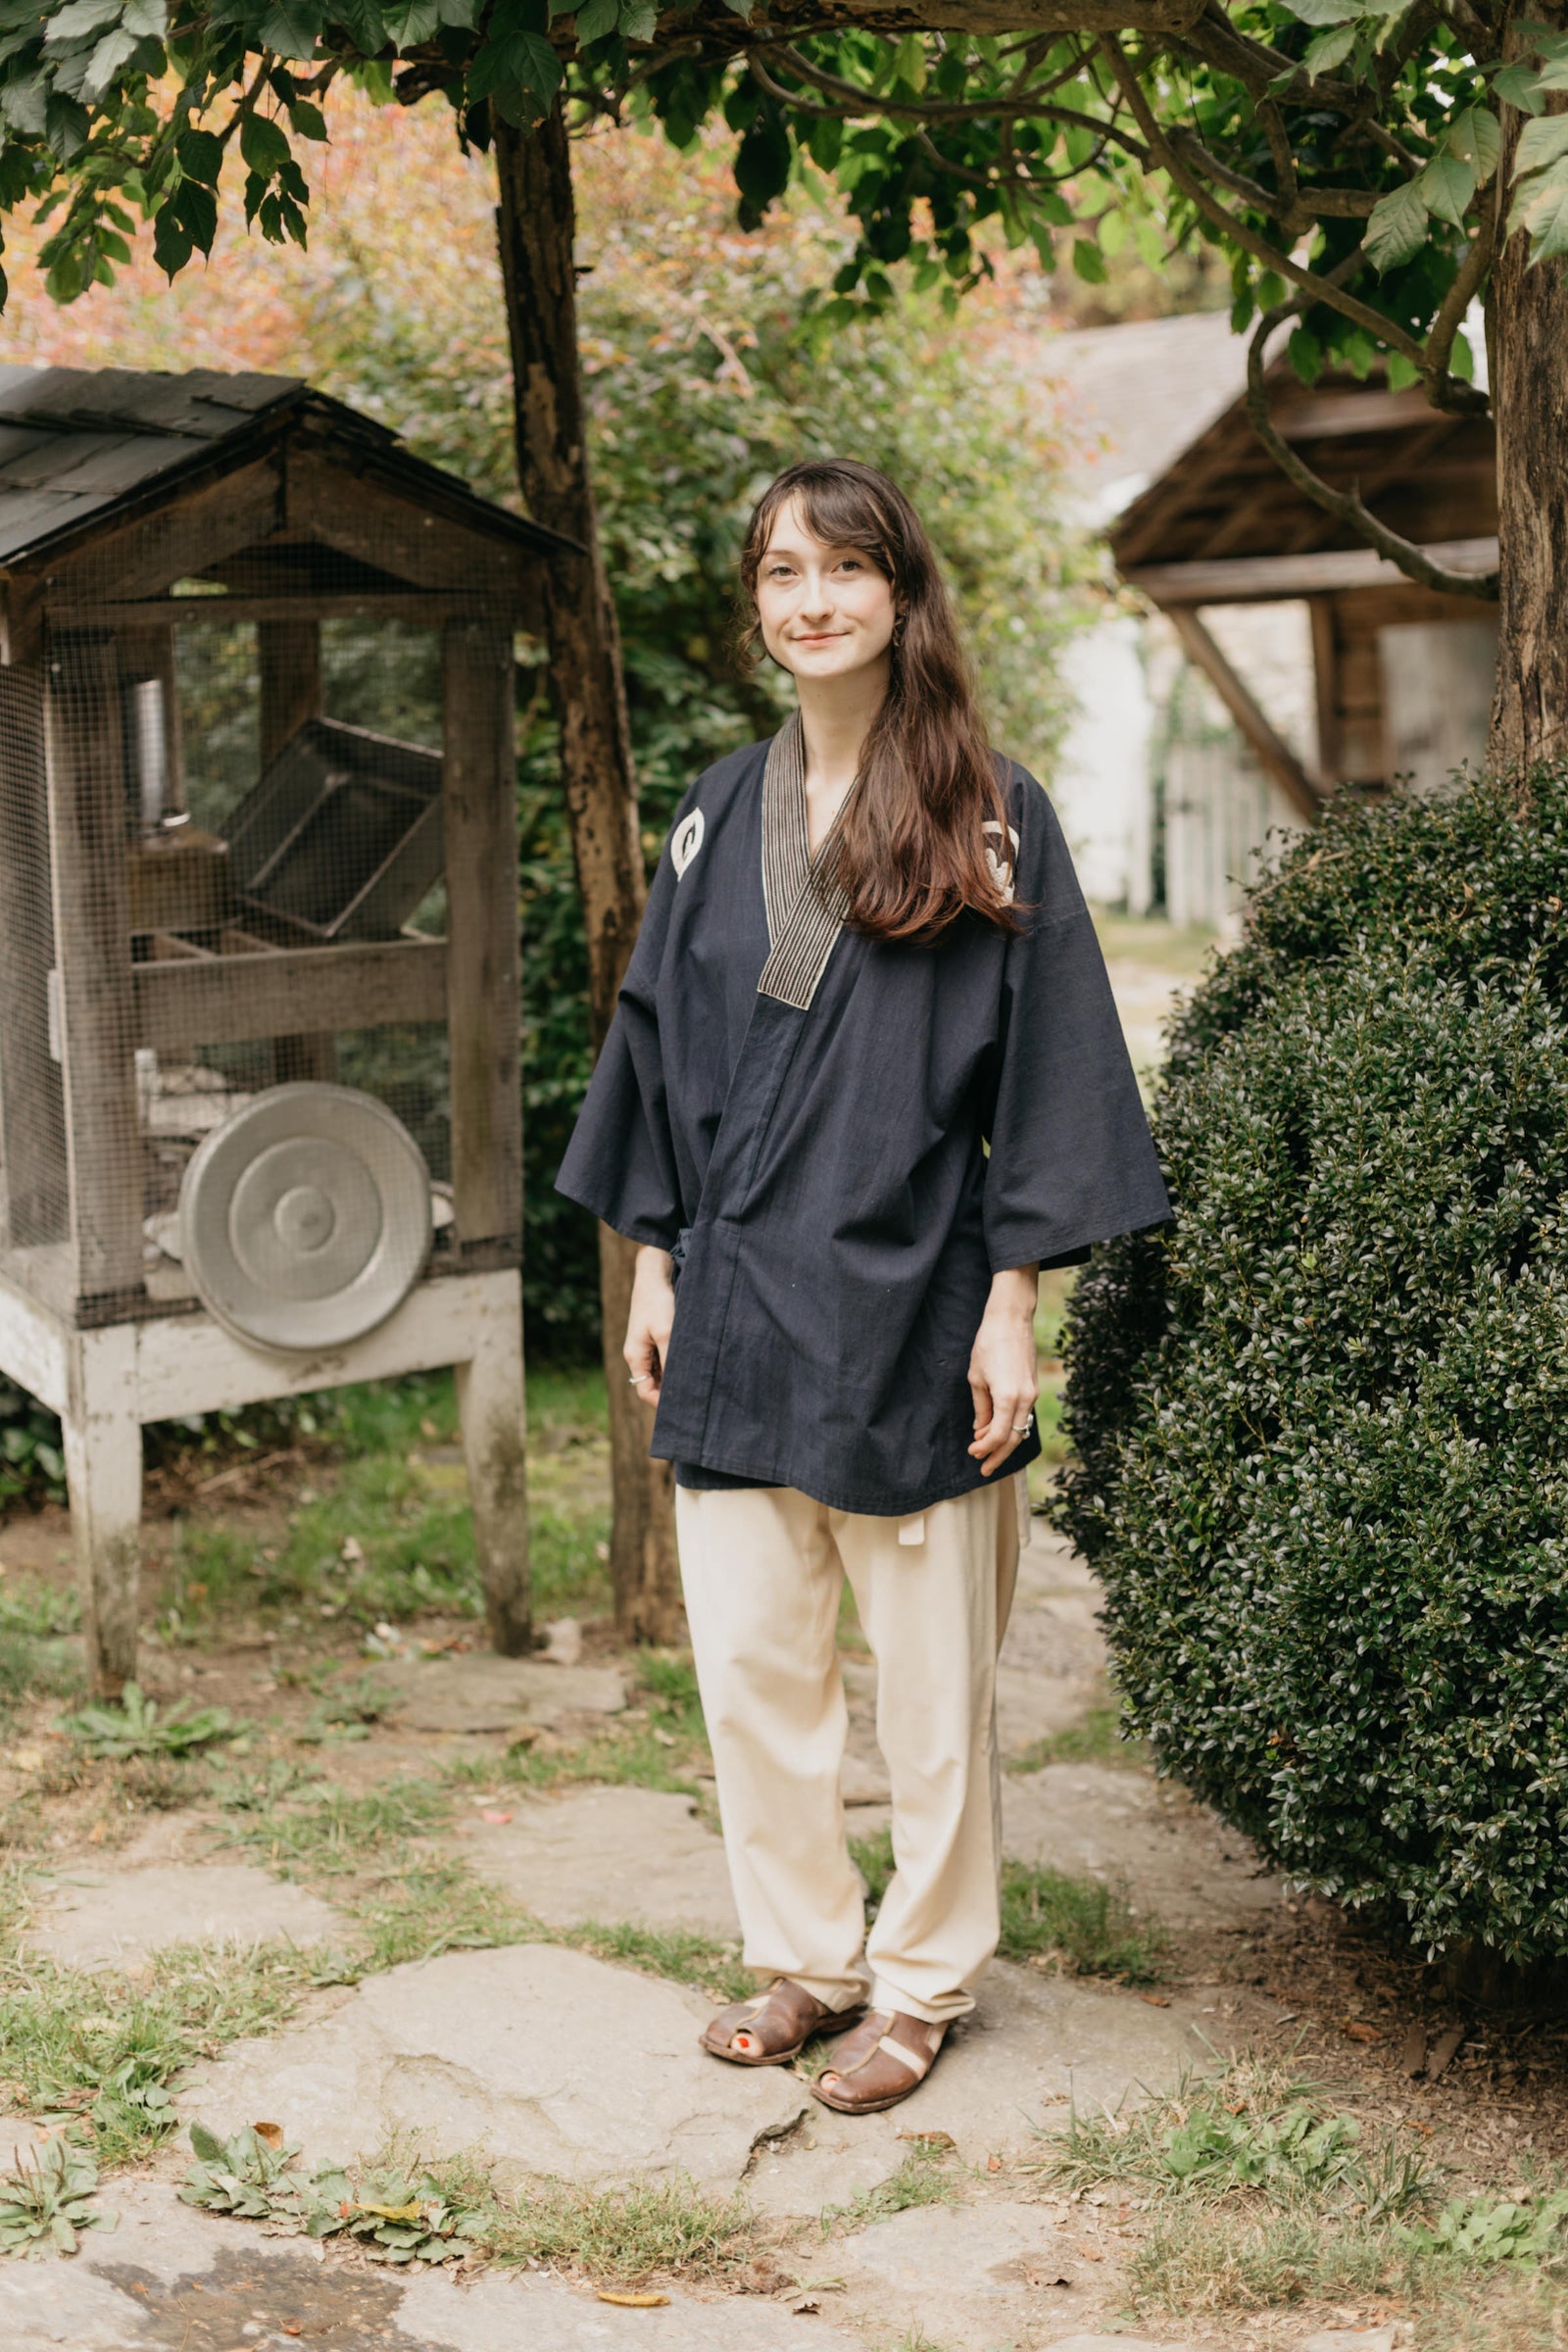 Folkwear 112 Men's & Women's Japanese Field Clothing Sewing Pattern